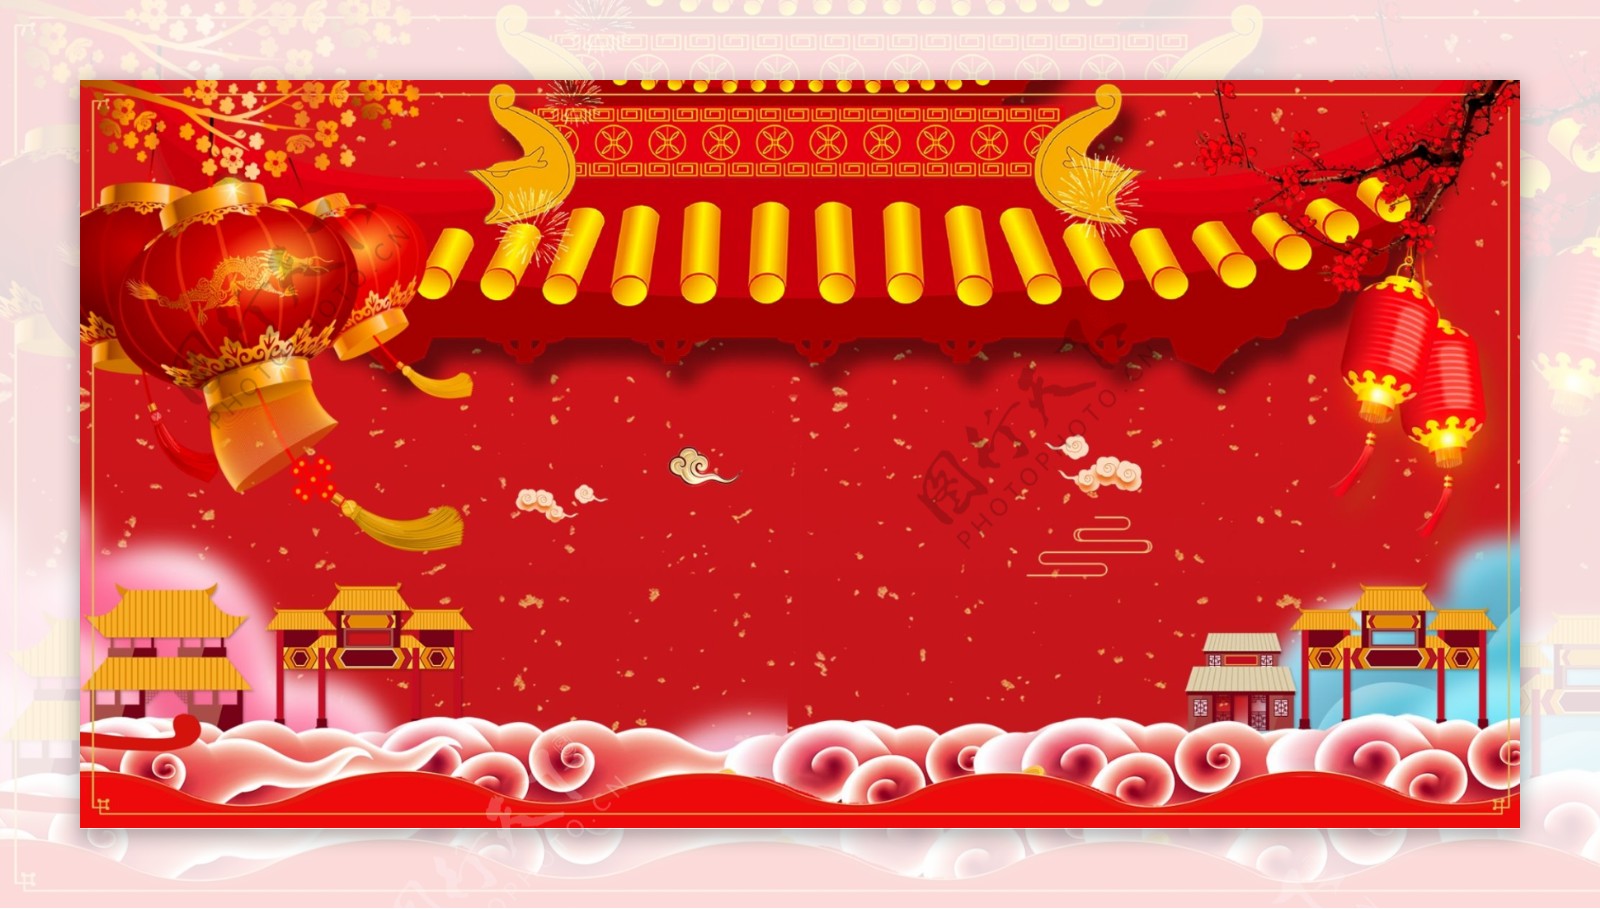 中国传统节日元旦海报背景